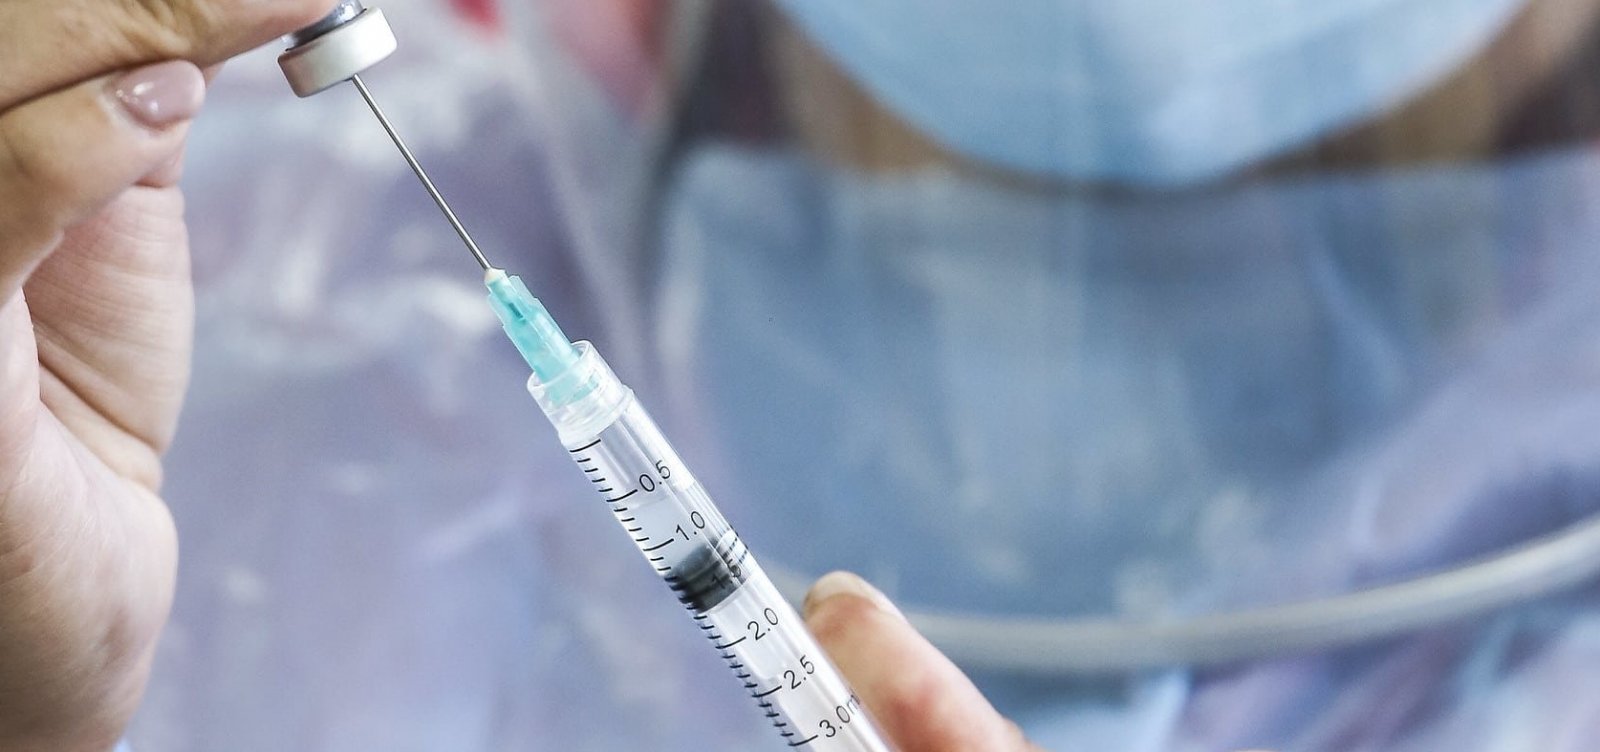 Covid-19: mais de 2,7 milhões foram vacinados em 26 estados e DF, aponta consórcio de imprensa